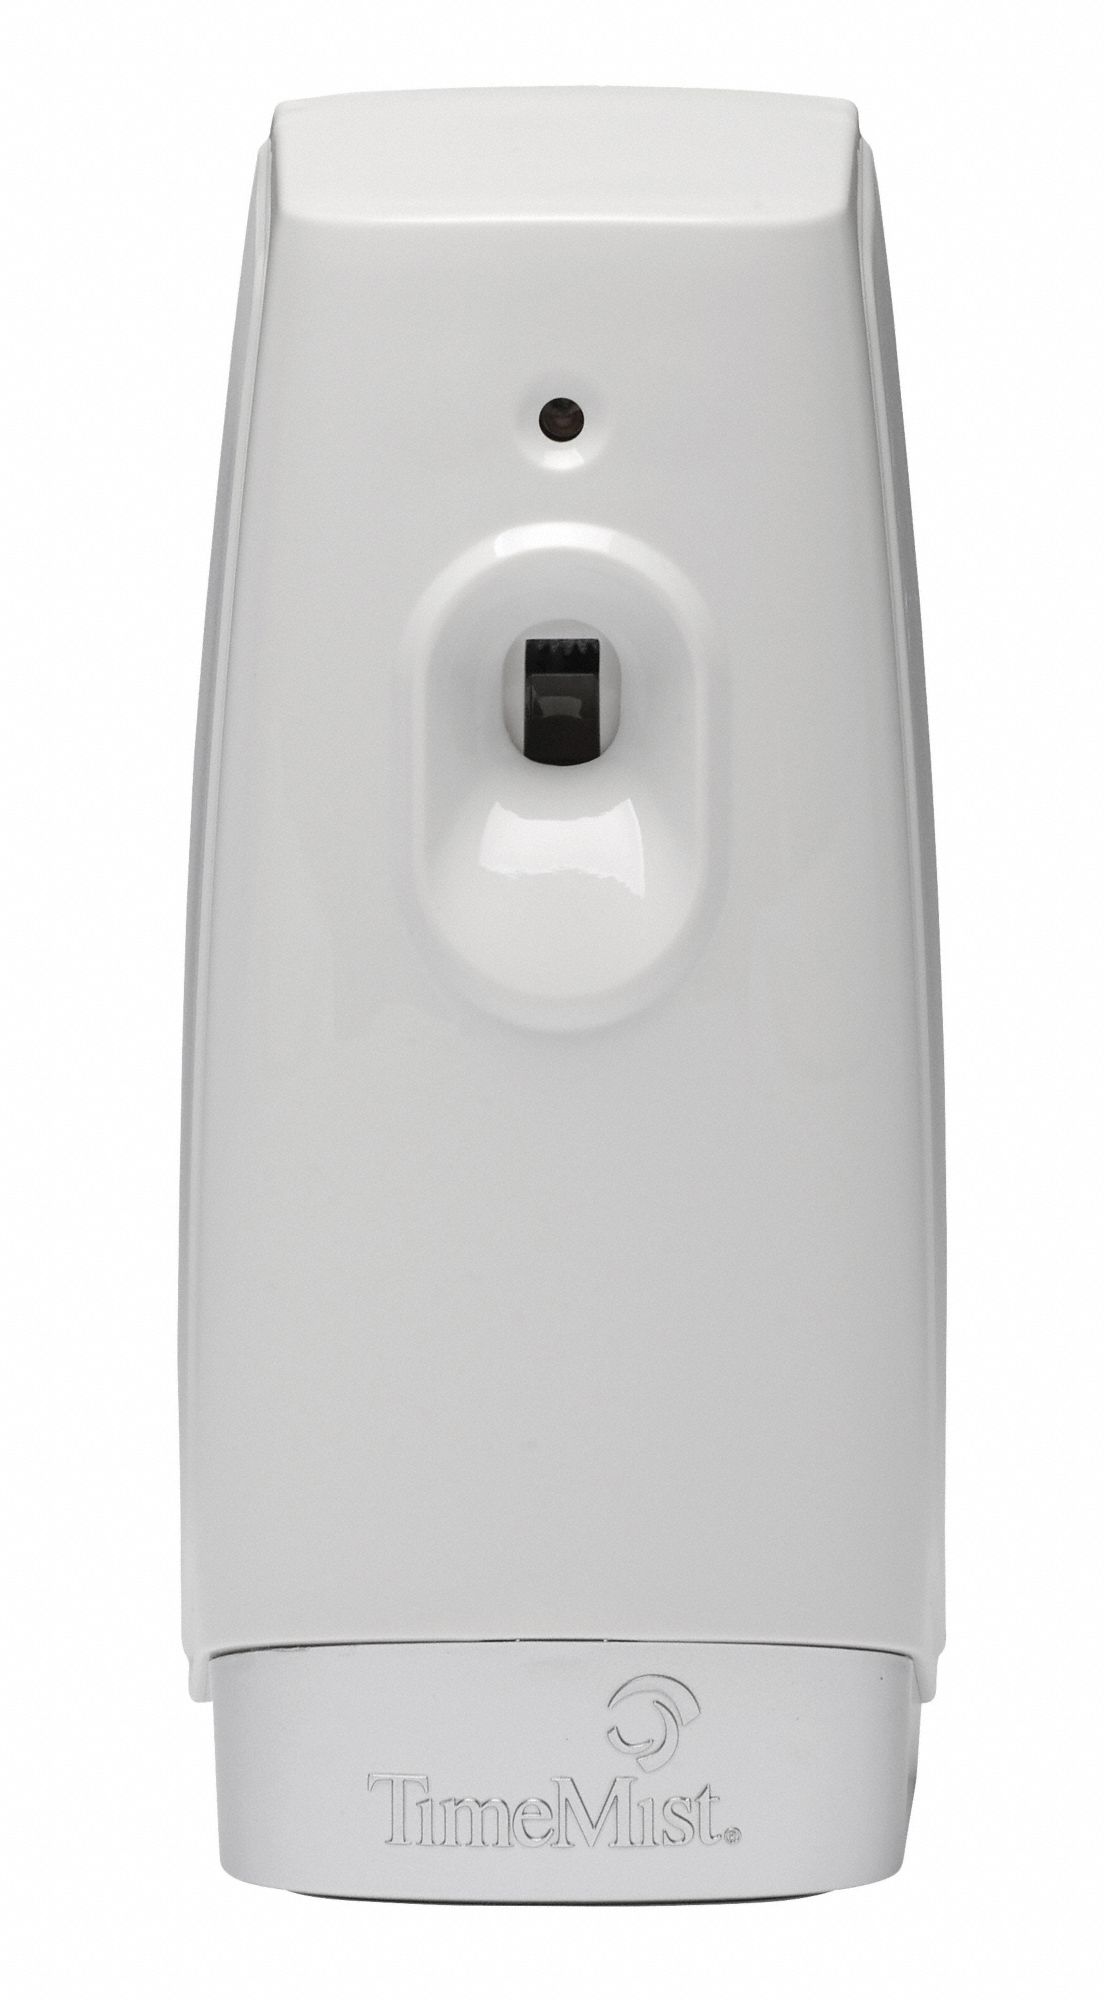 Air Freshener Dispenser: TimeMist®, Wall, Dispenser Only, Aerosol Spray, White, 2 3/4 in Dp